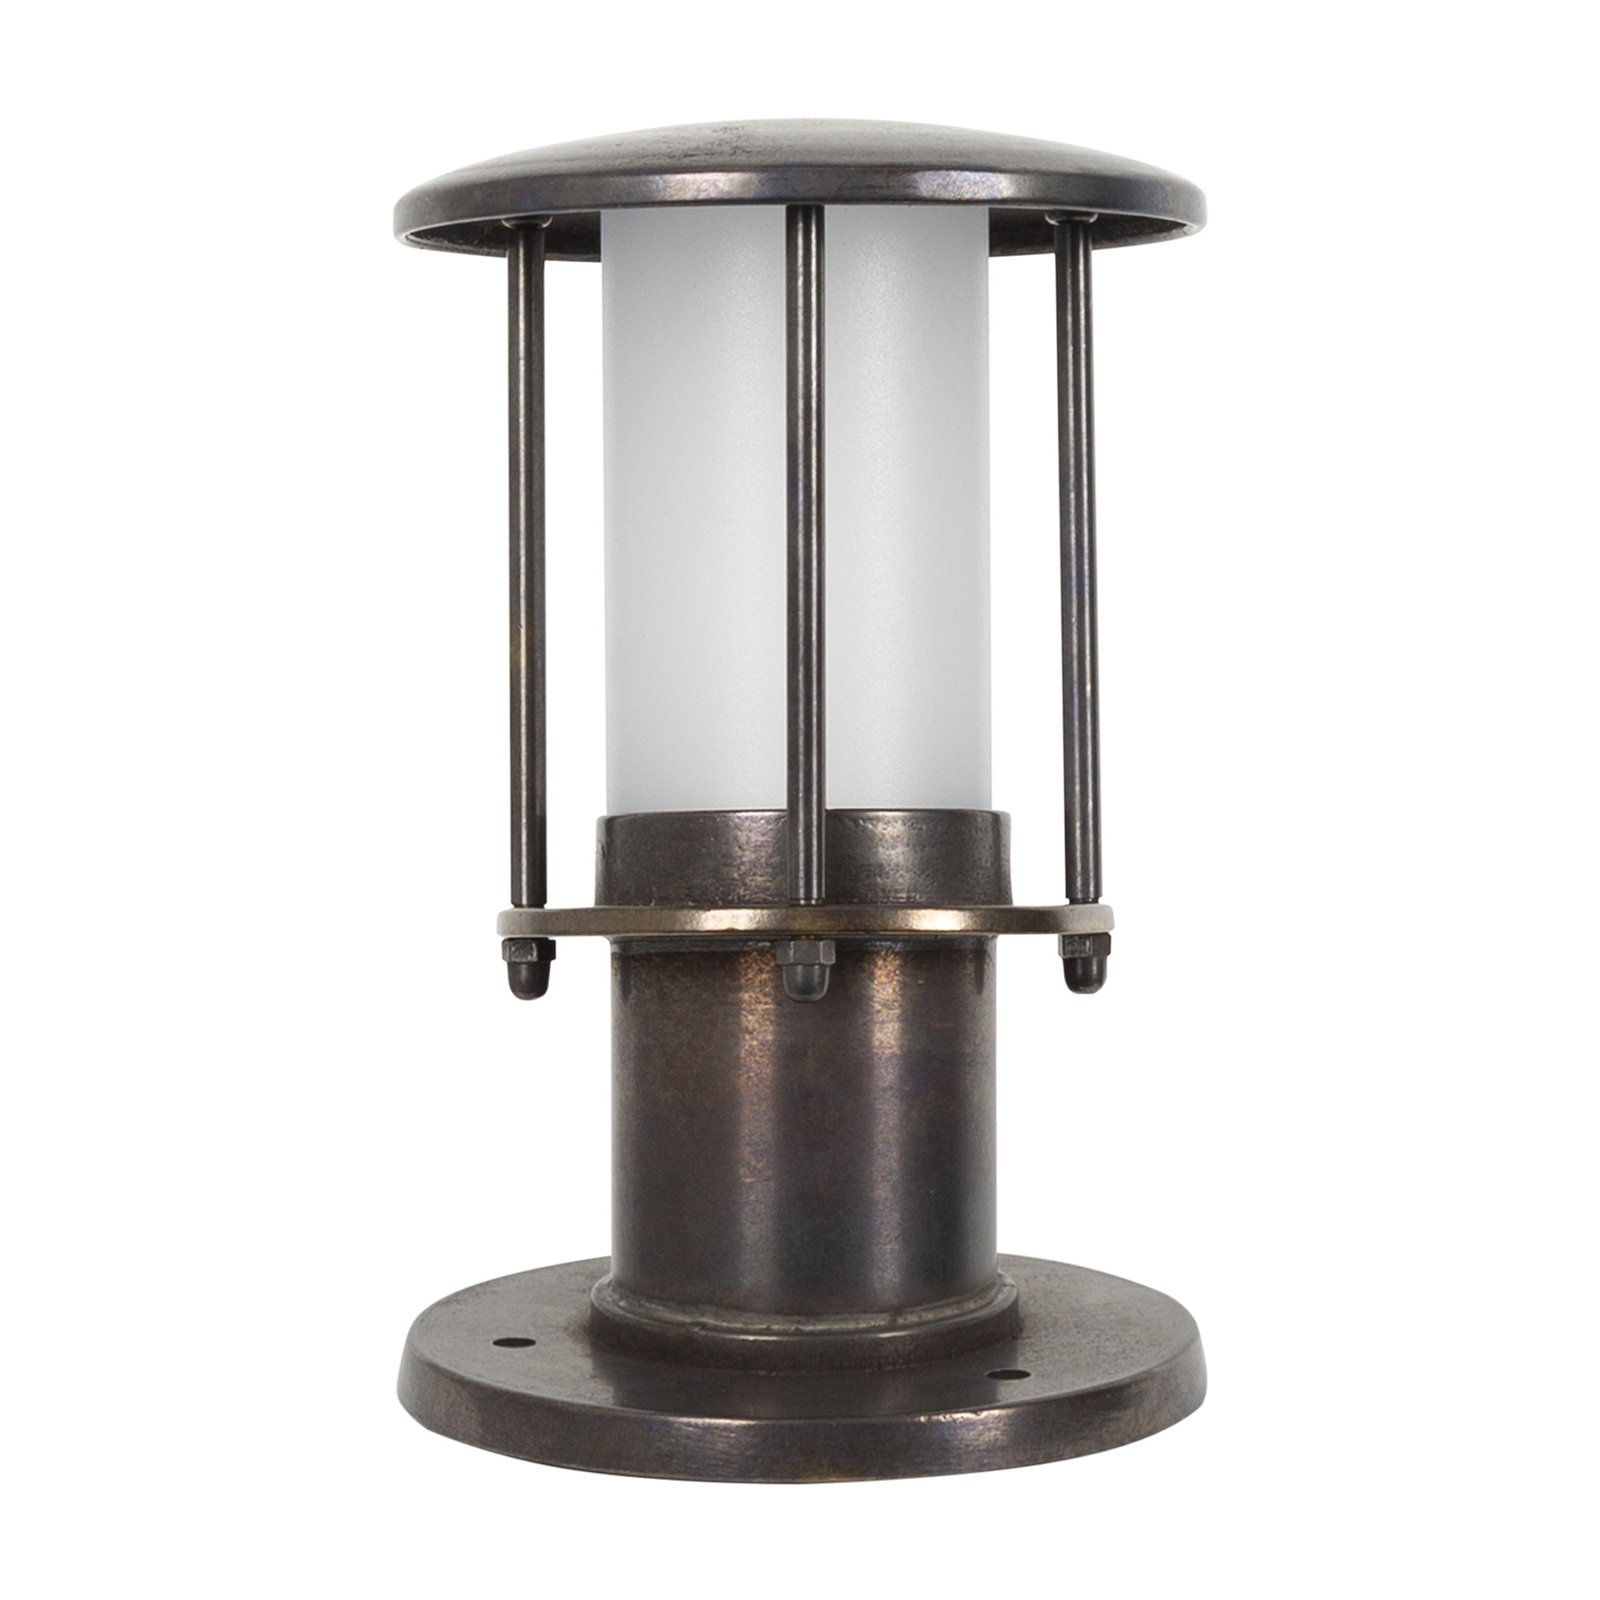 Resident 3 pillar lamp made of brass, bronze